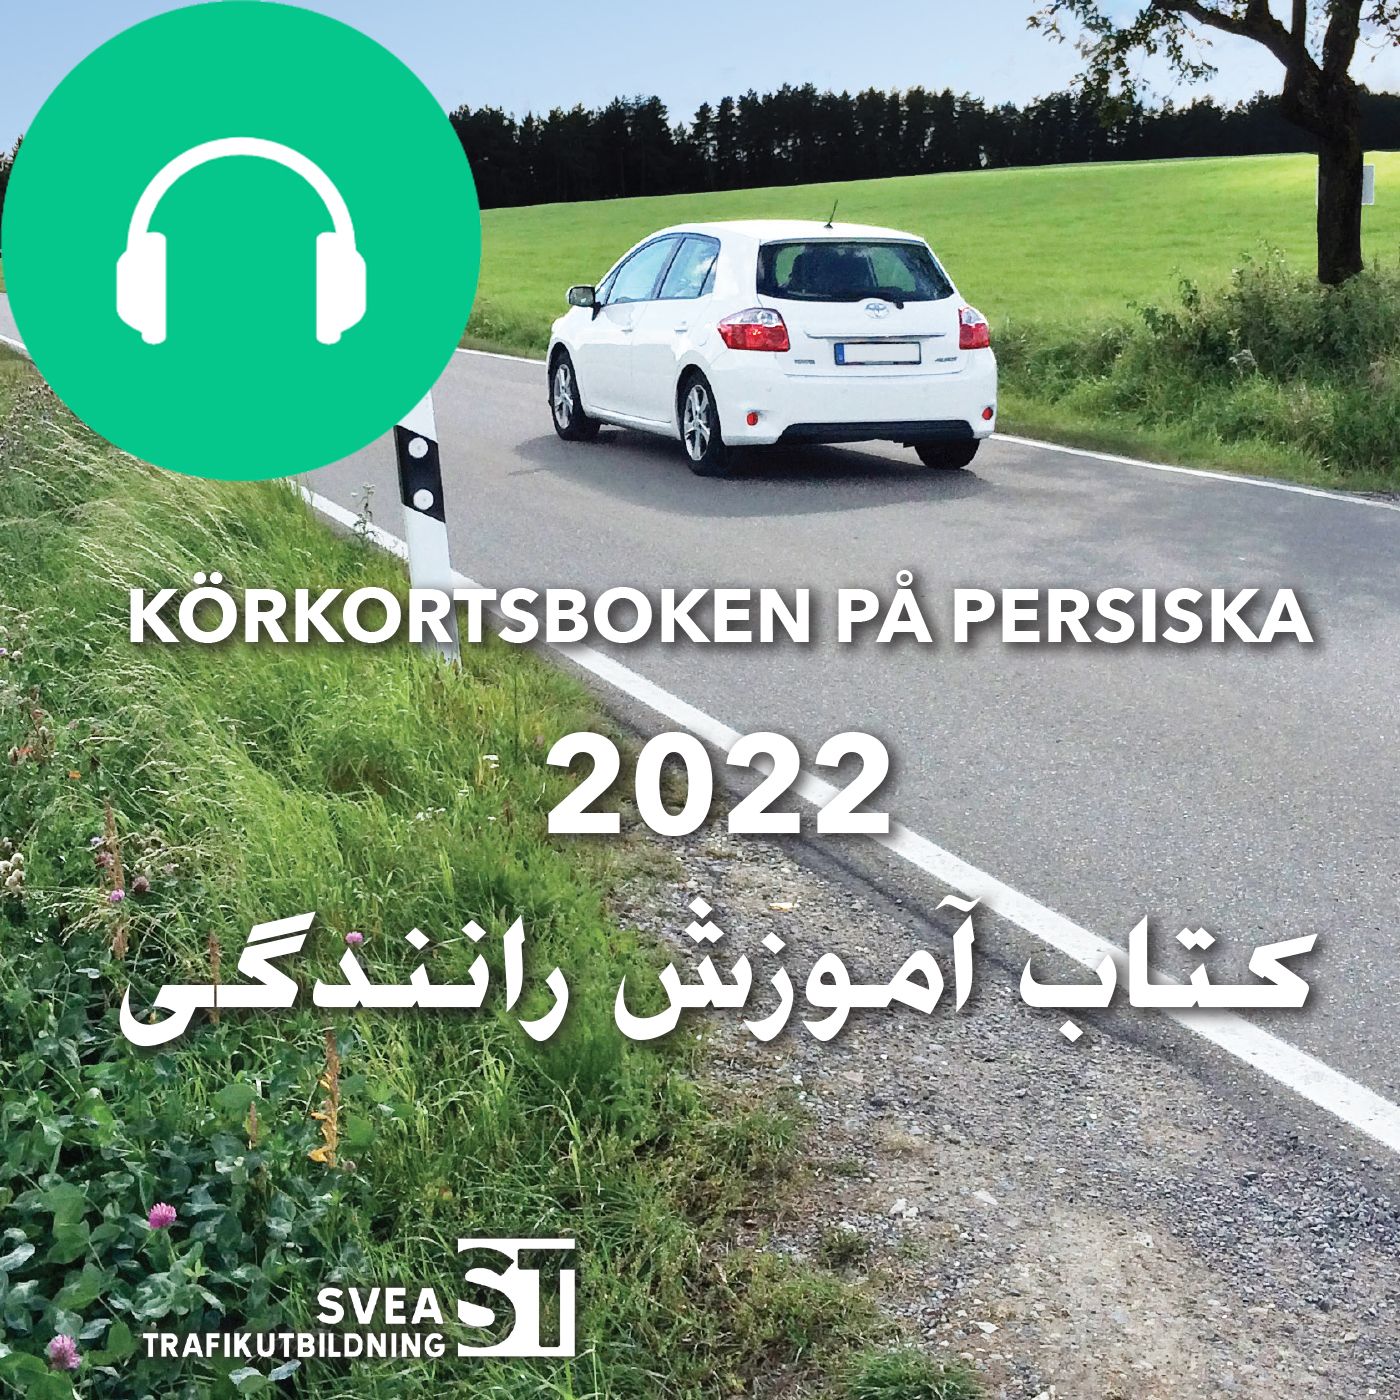 Körkortsboken på Persiska 2022, ljudbok av Svea Trafikutbildning